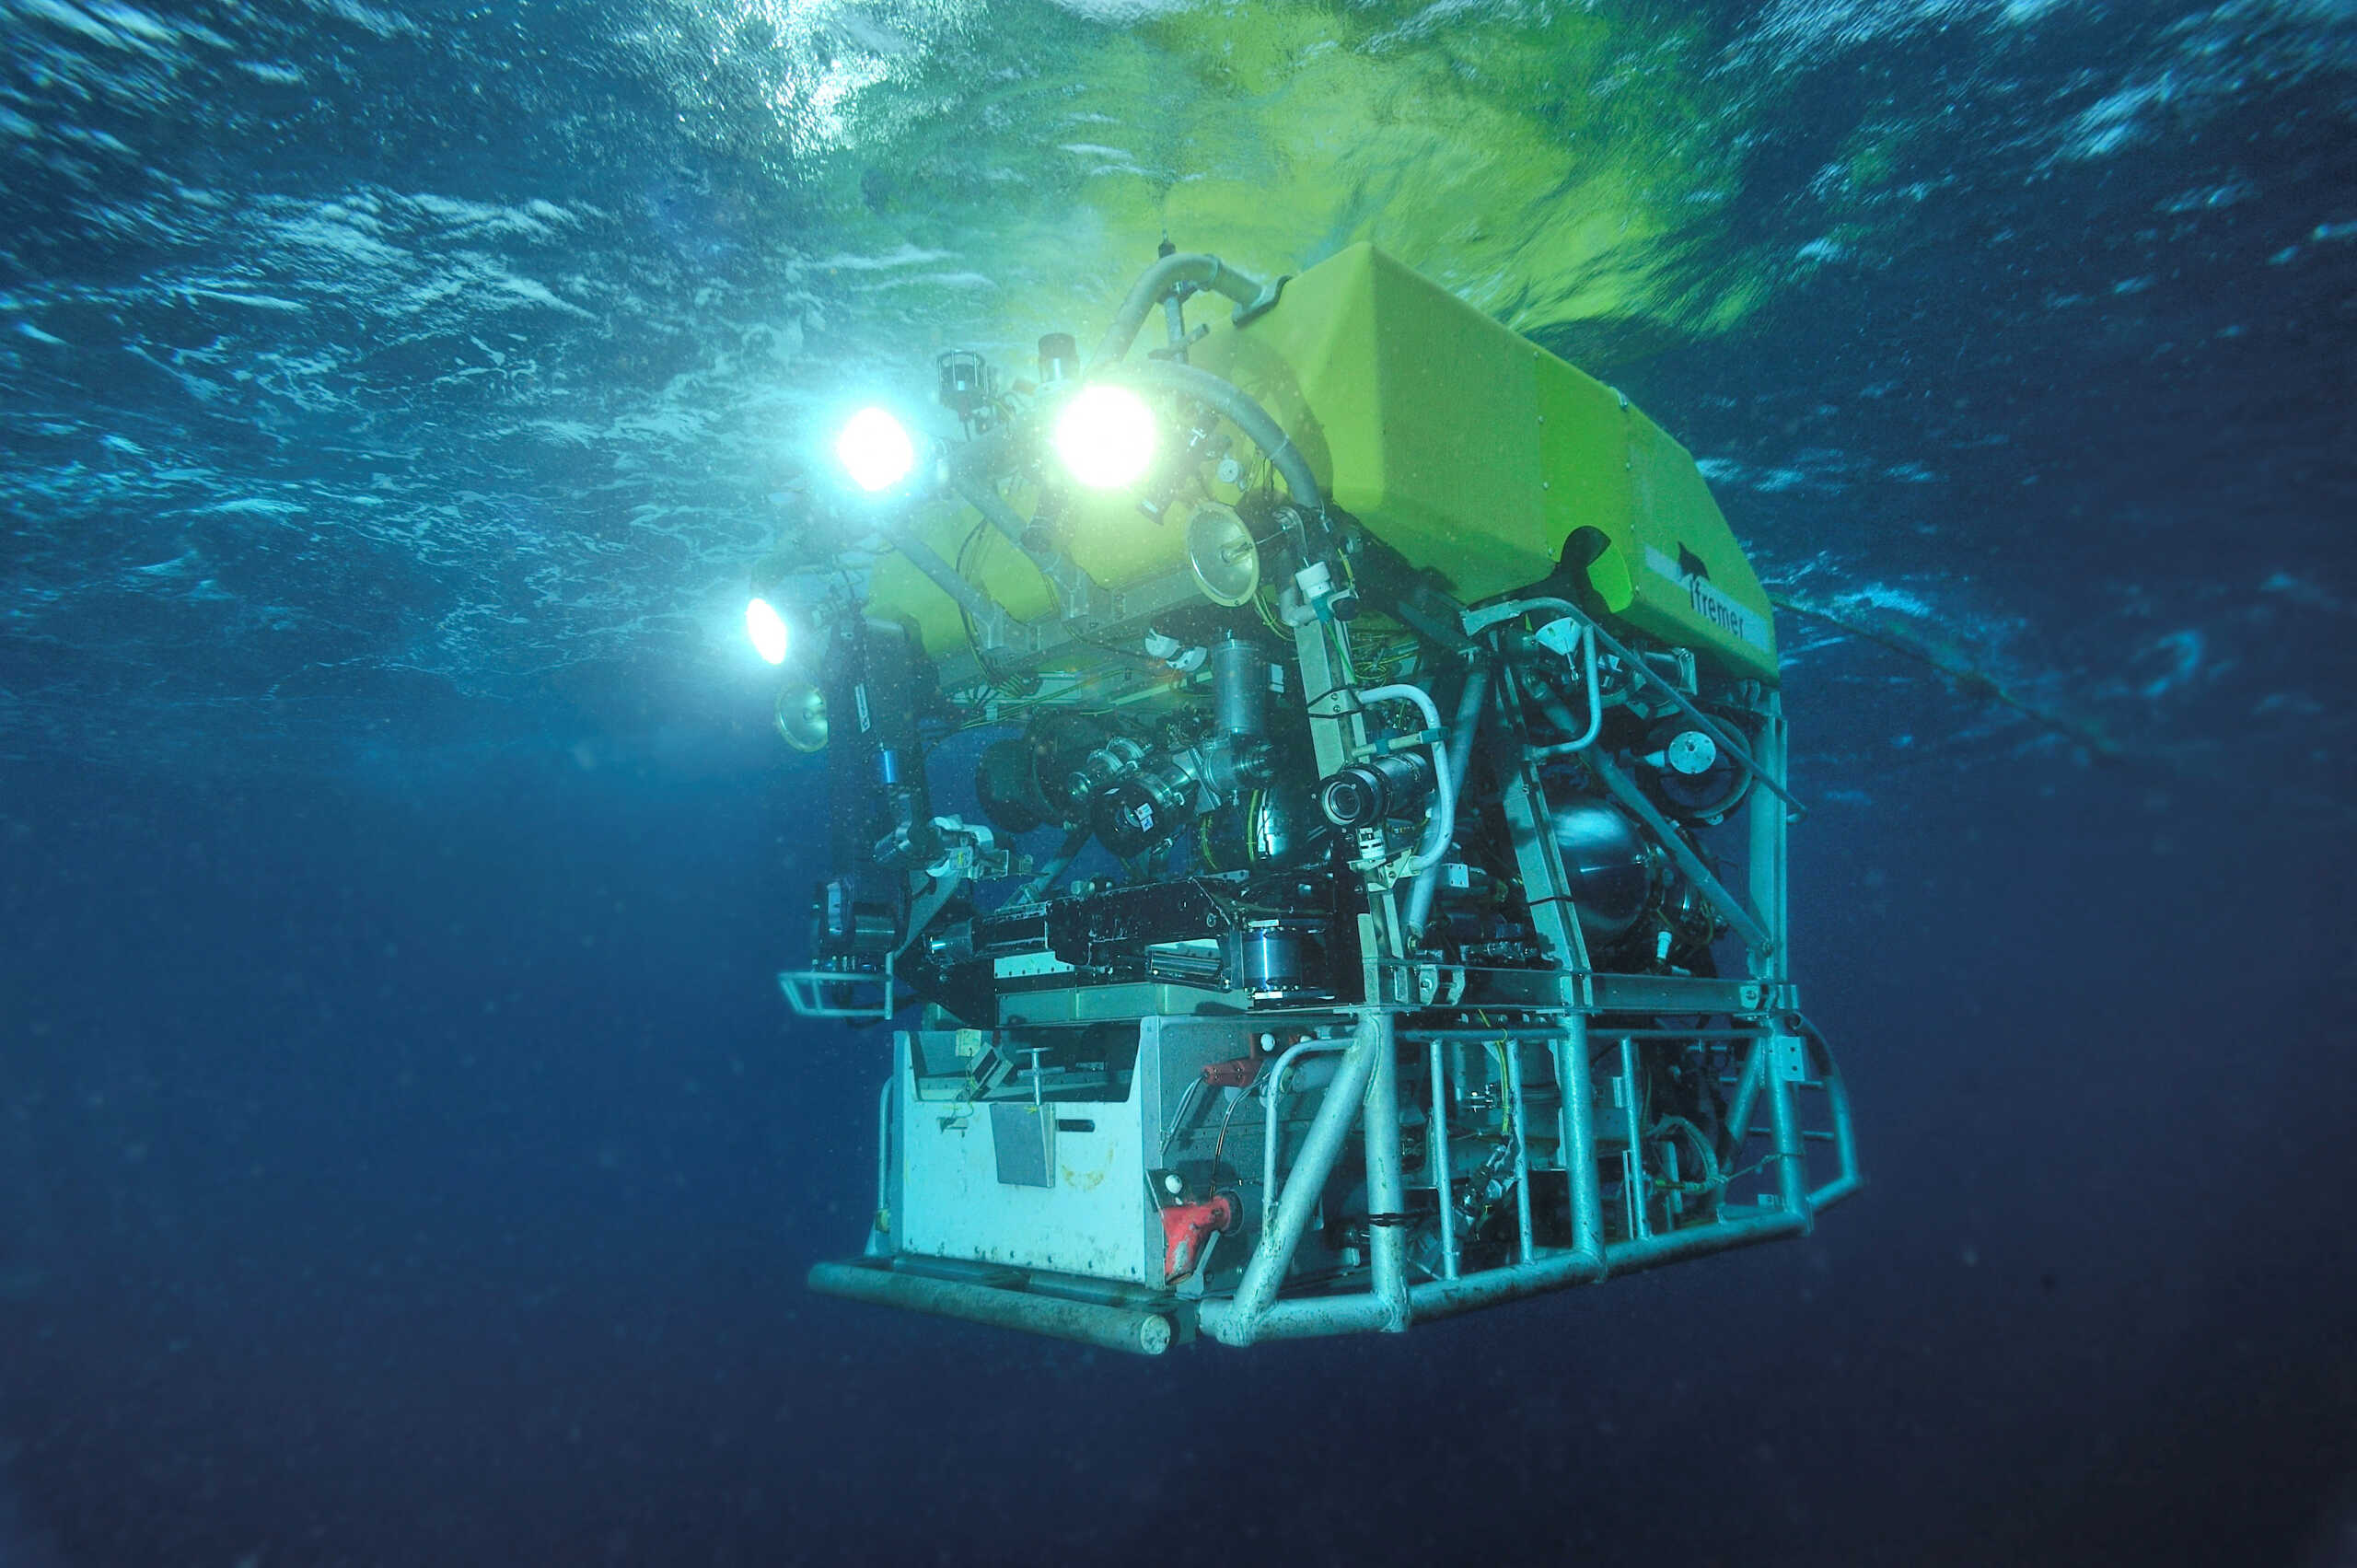 Τιτανικός: Ώρα μηδέν για το υποβρύχιο – Καταδύεται το γαλλικό ρομπότ, τελειώνει το οξυγόνο